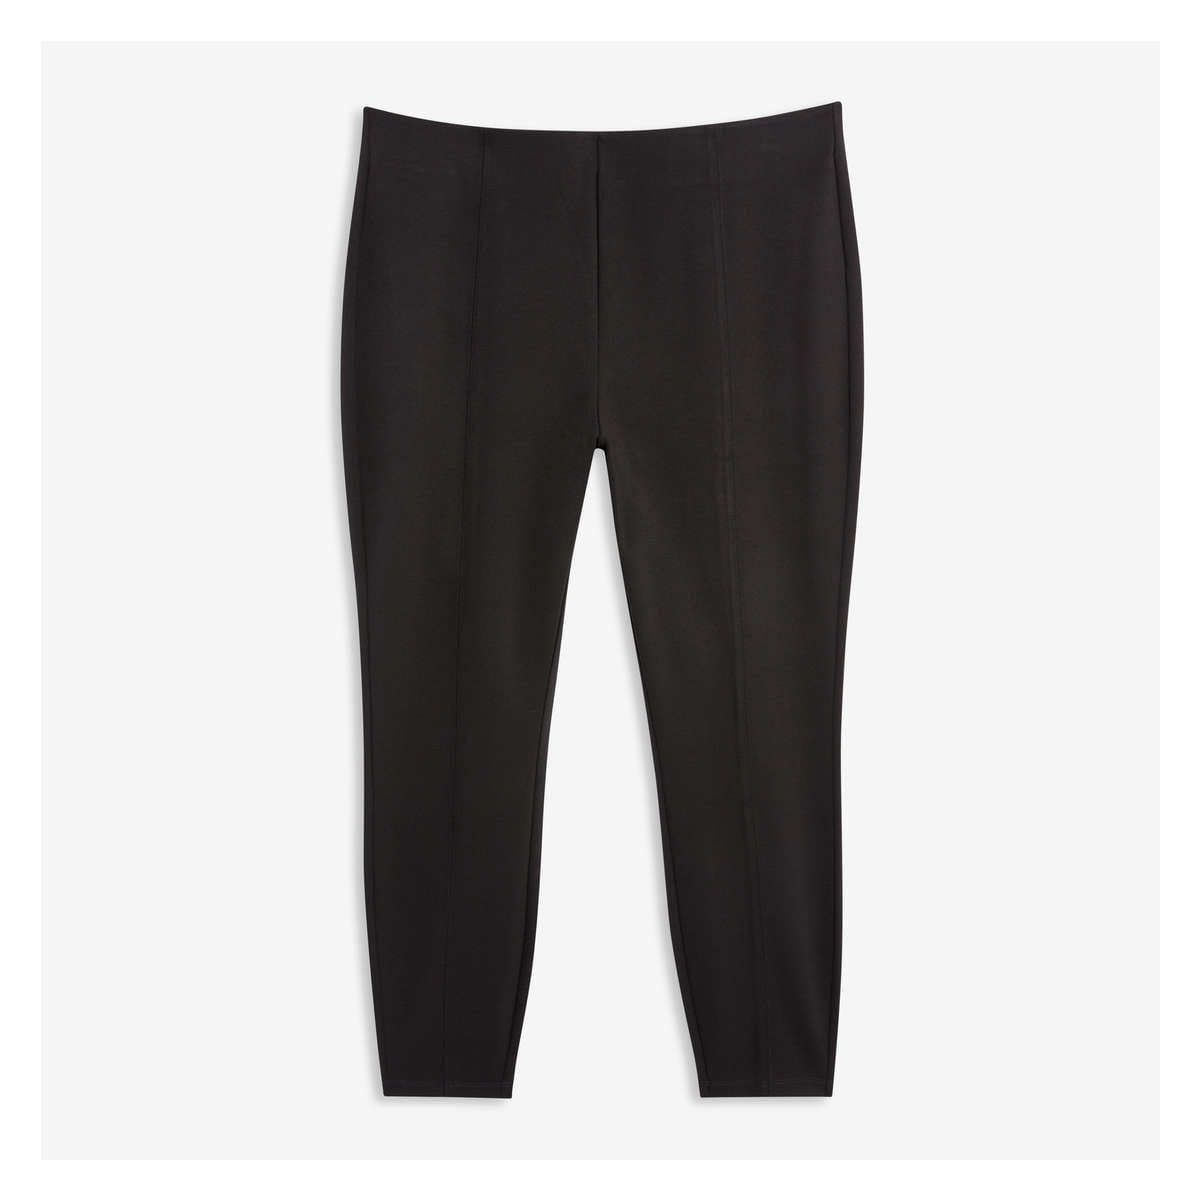 Soft Surroundings, Pants & Jumpsuits, Soft Surroundings Essential Knit  Ponte Pant